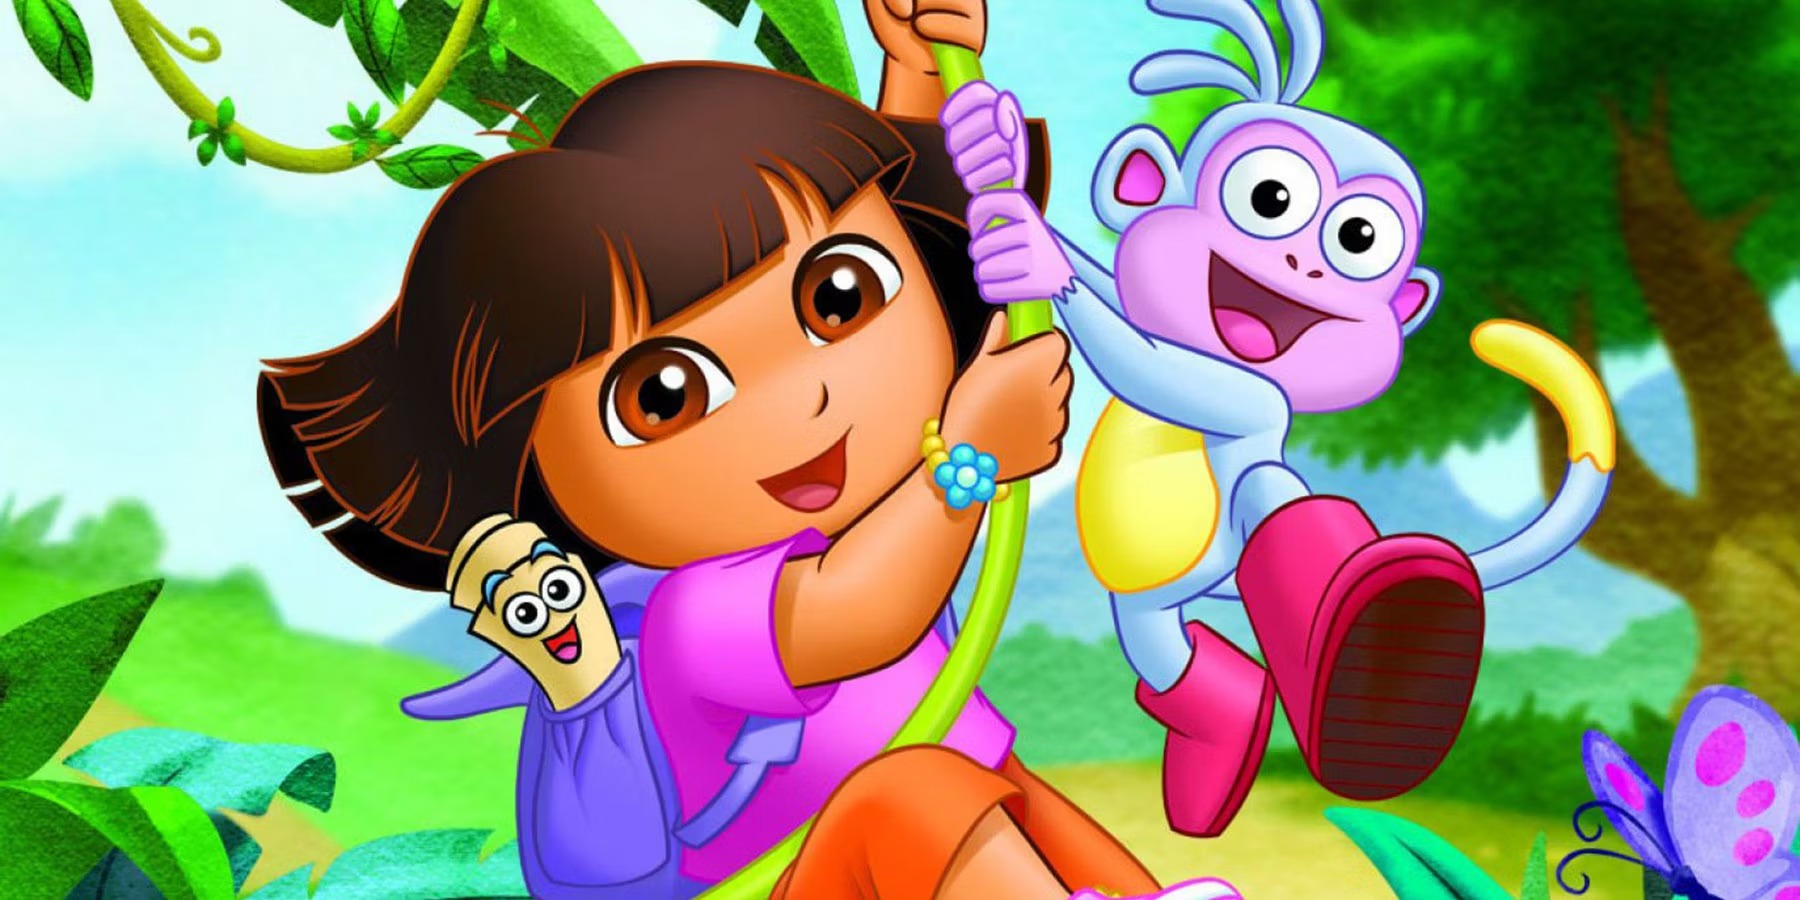 21 Facts About Dora The Explorer (Dora The Explorer) - Facts.net